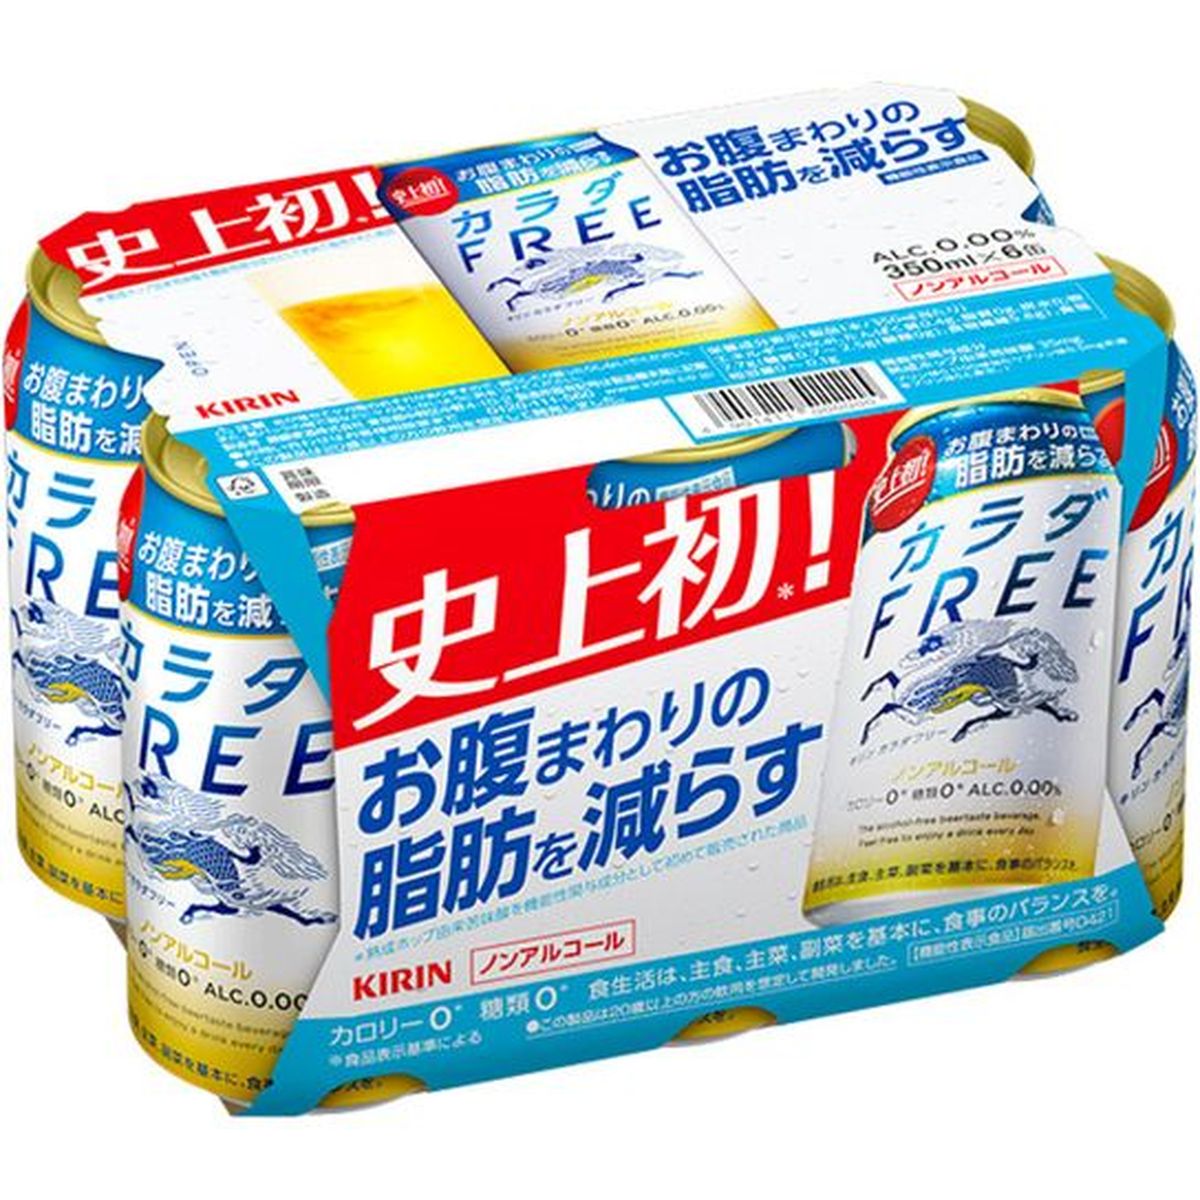 【4個入リ】キリン カラダFREE 6缶パック 350